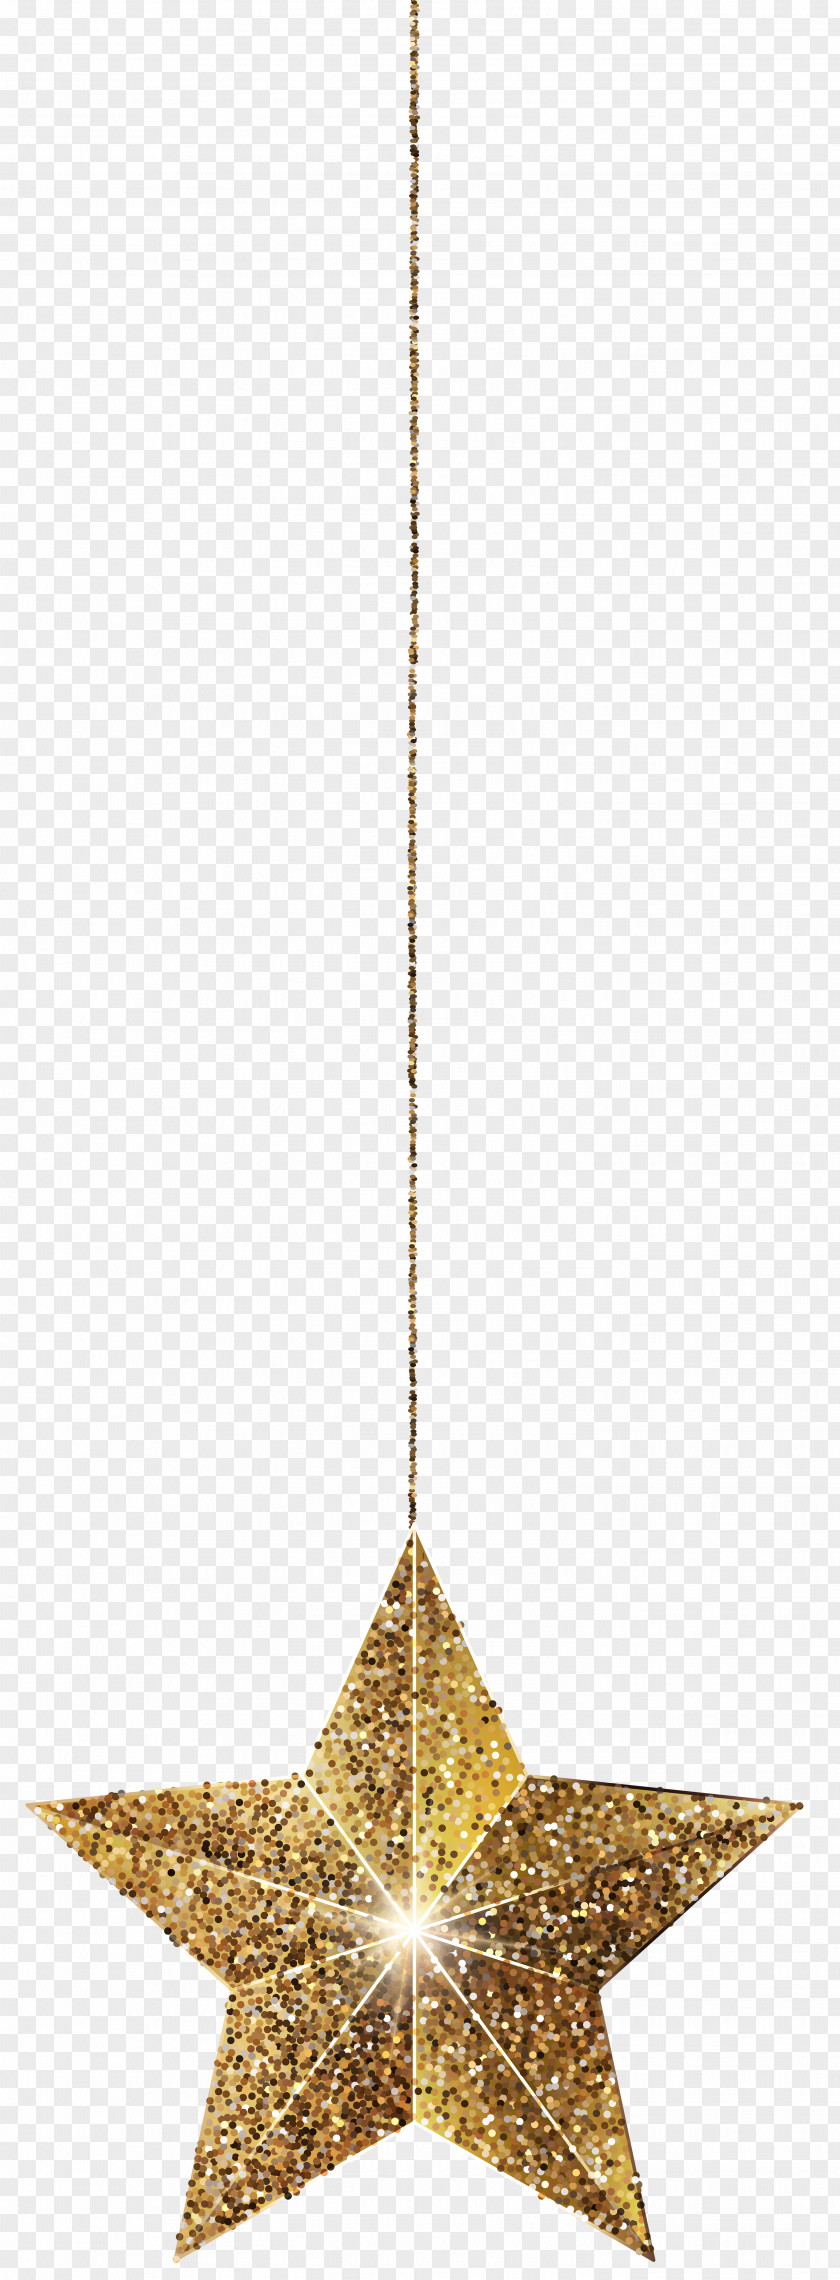 Golden Hanging Star Clip Art Image PNG